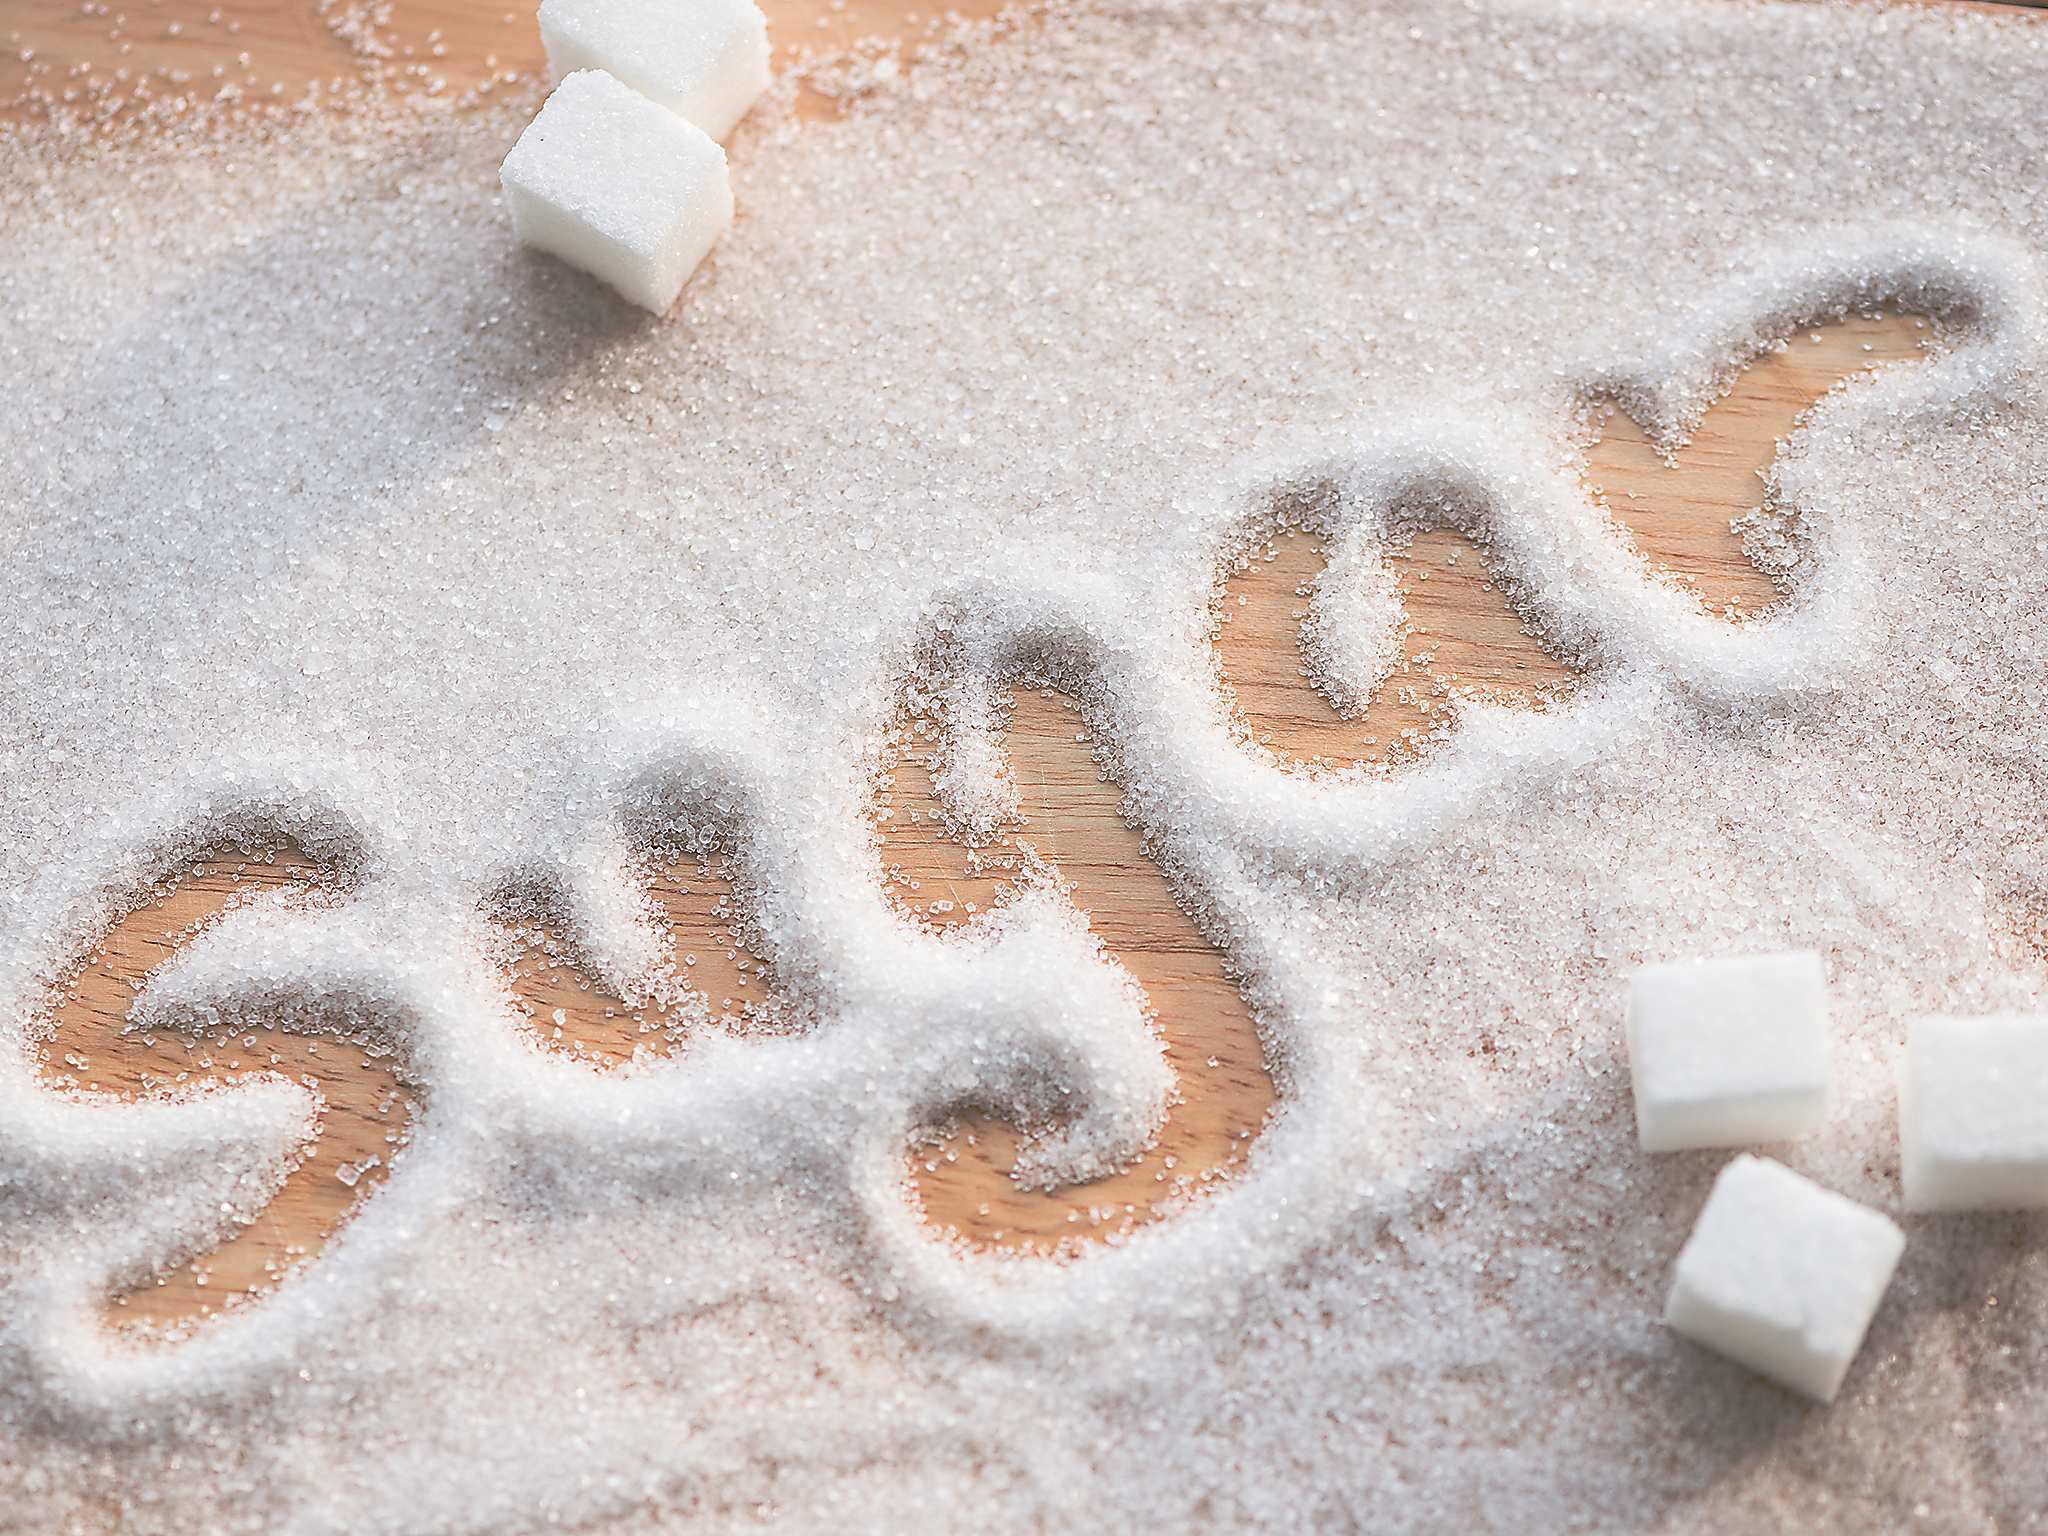 Τί θα γινόταν αν σταματούσατε τη ζάχαρη για μια εβδομάδα (βίντεο)